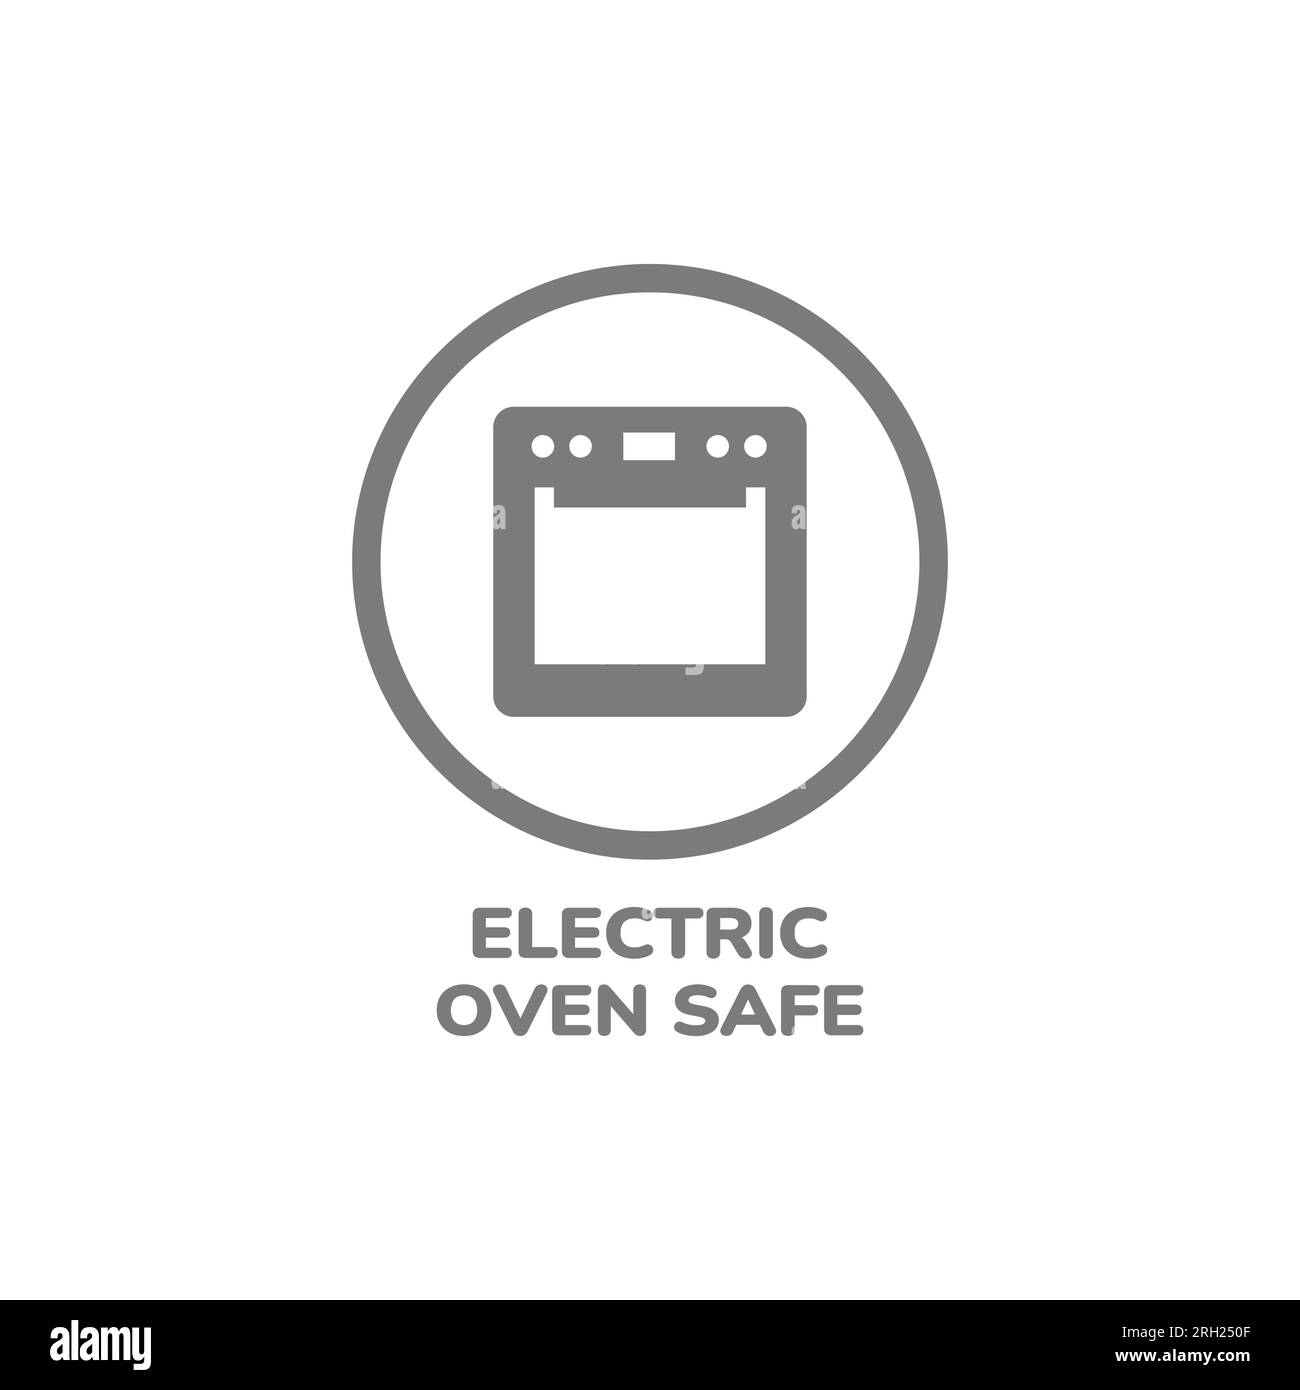 Etichetta vettoriale circolare sicura per forno elettrico. Adesivo per pentole, padelle e piatti. Illustrazione Vettoriale